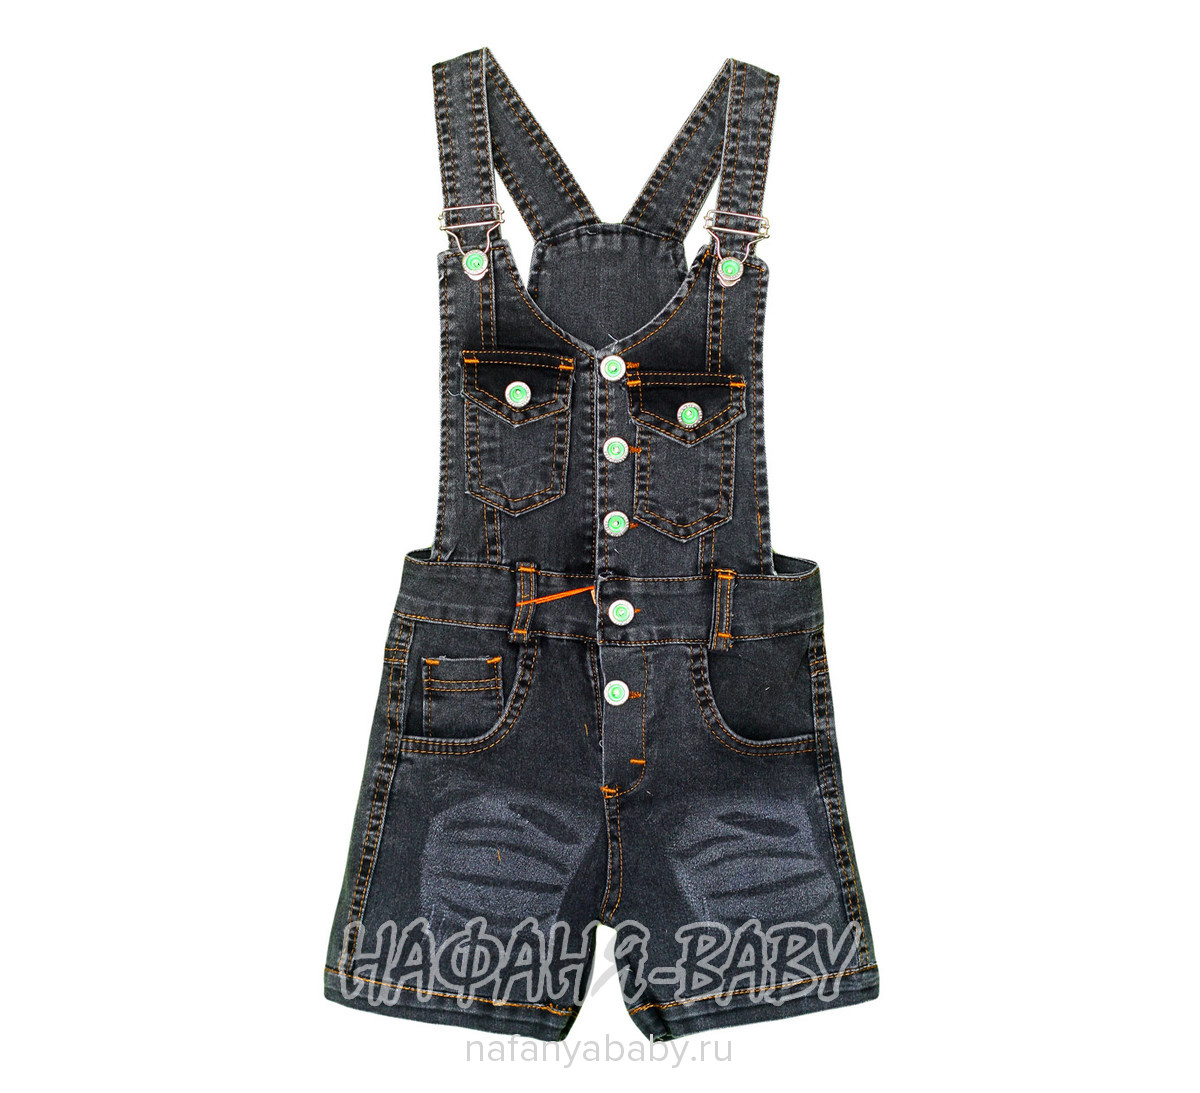 Детский джинсовый комбинезон-шорты AYNUR, купить в интернет магазине Нафаня. арт: 9256.